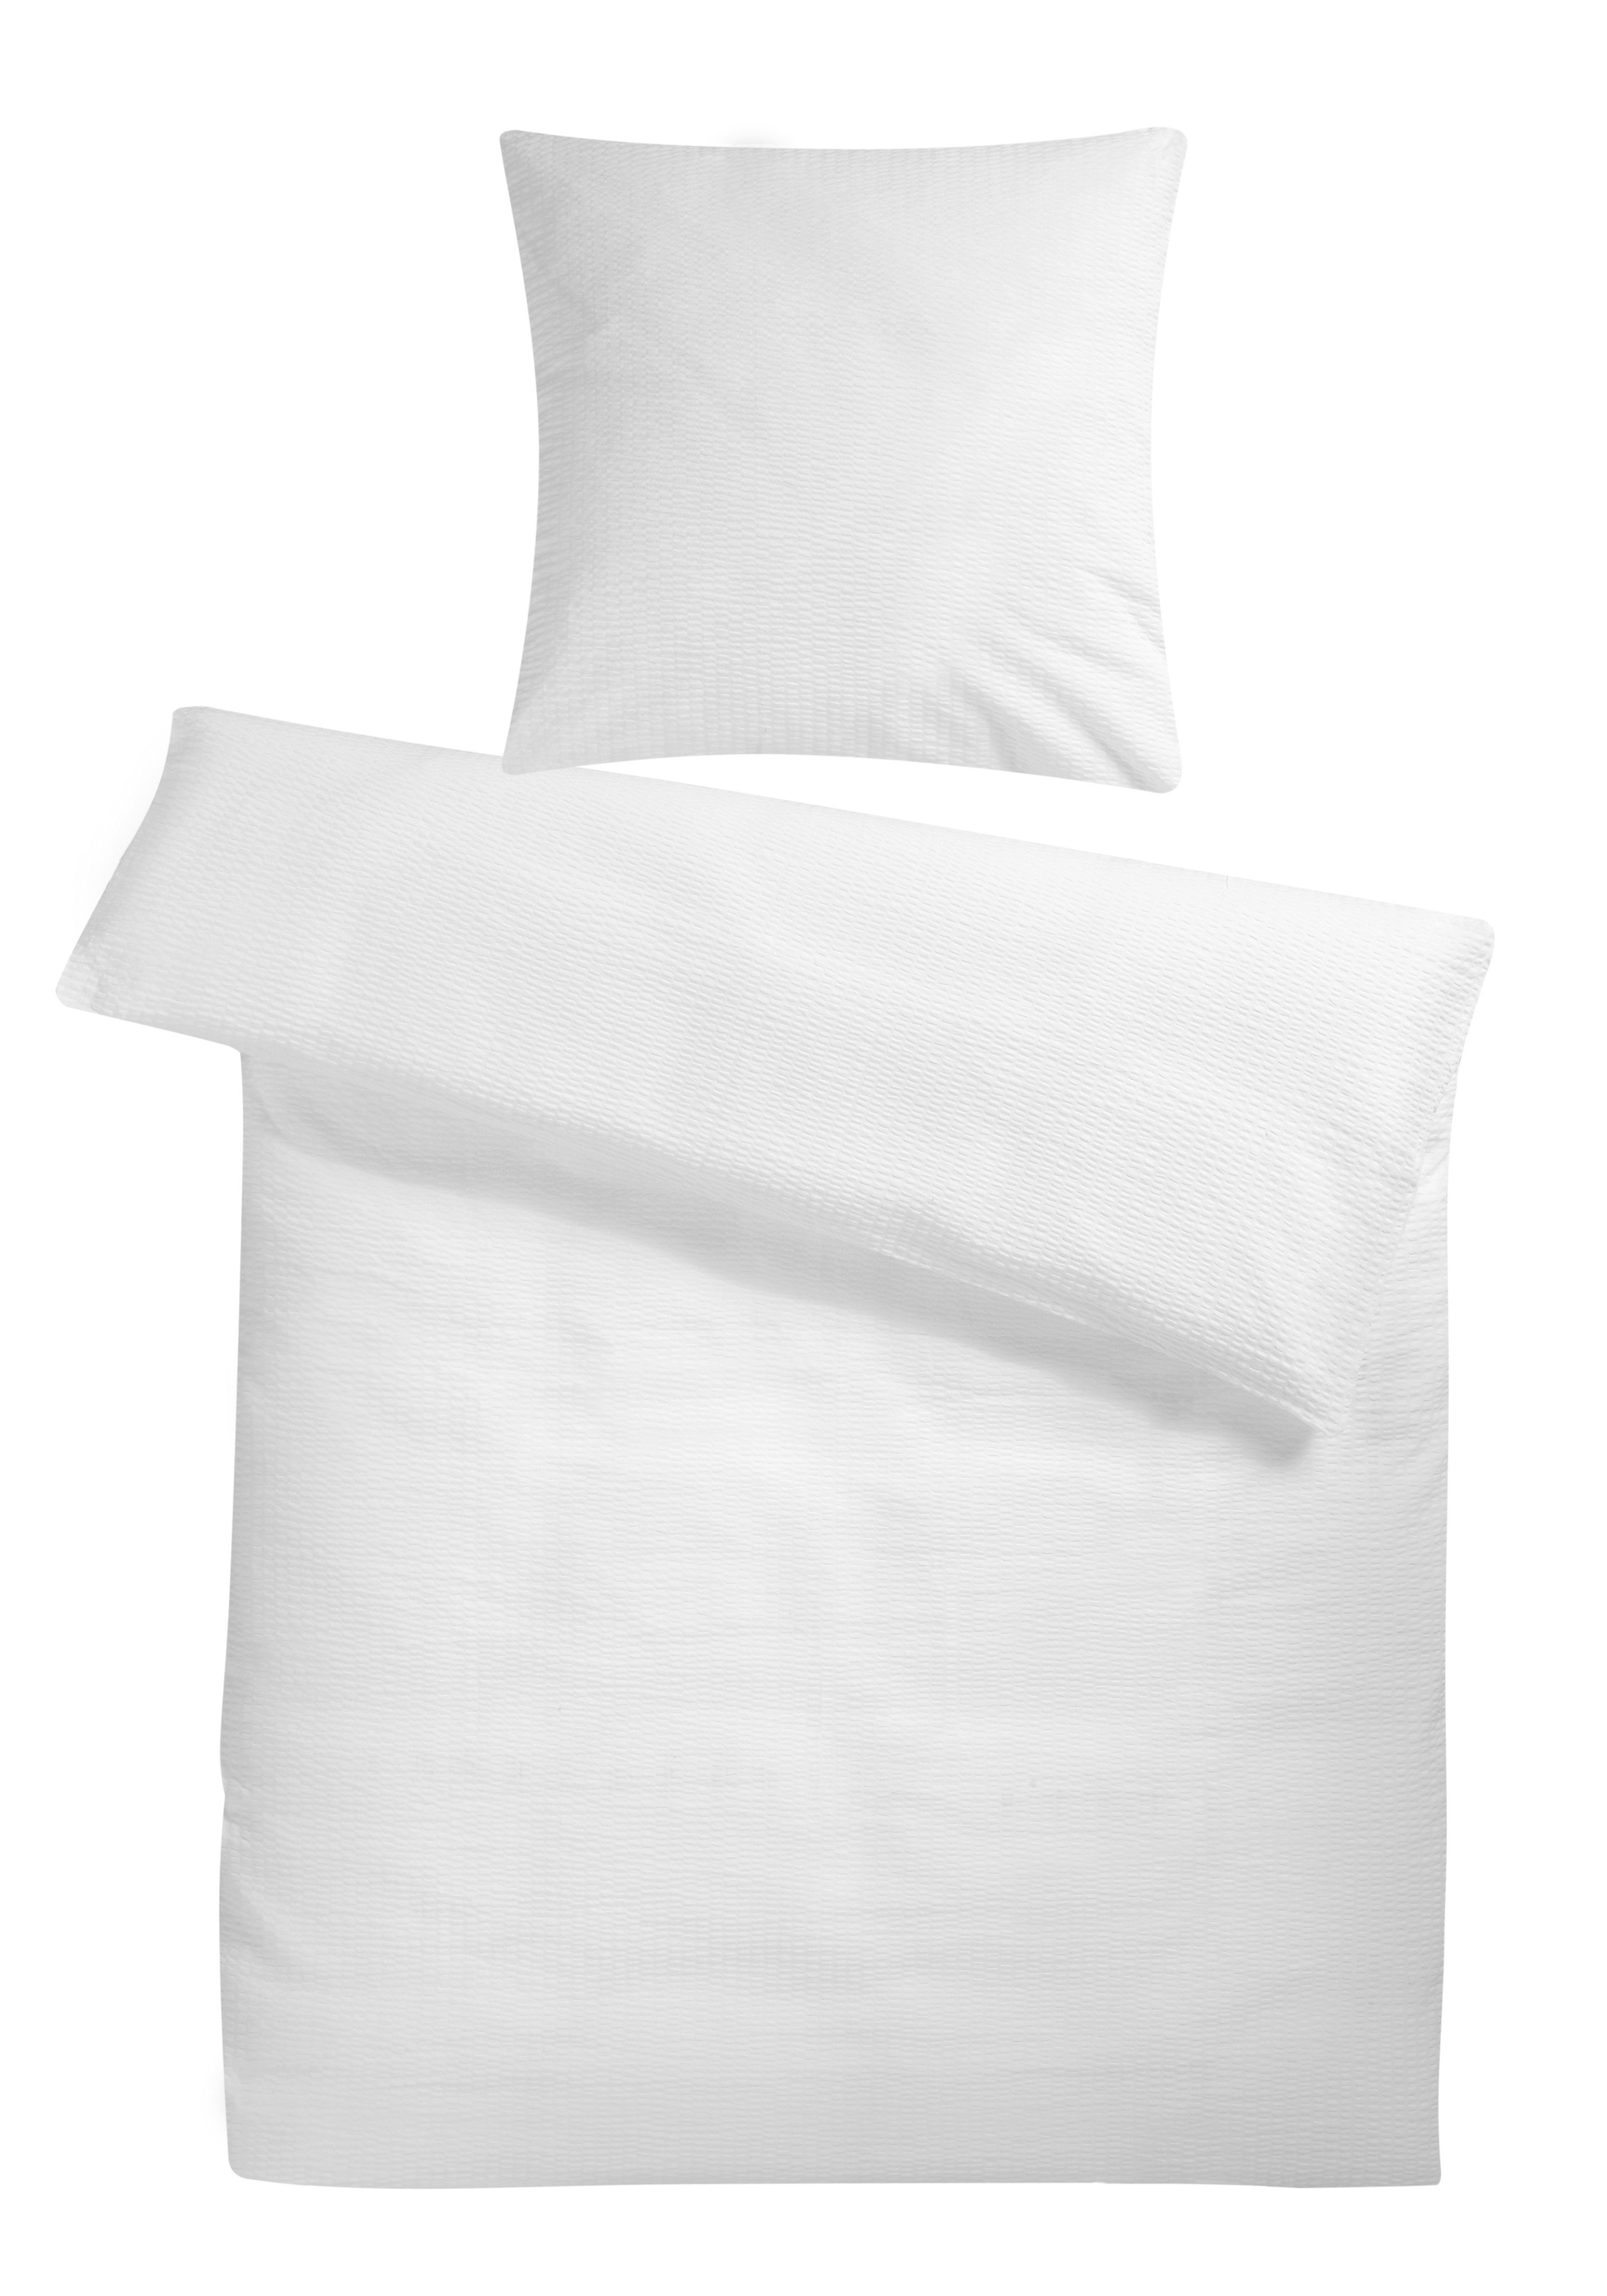 Biber-Bettwäsche 155x220 Bettdeckenbezug Kopfkissenbezug Baumwolle Dunkelgrau 